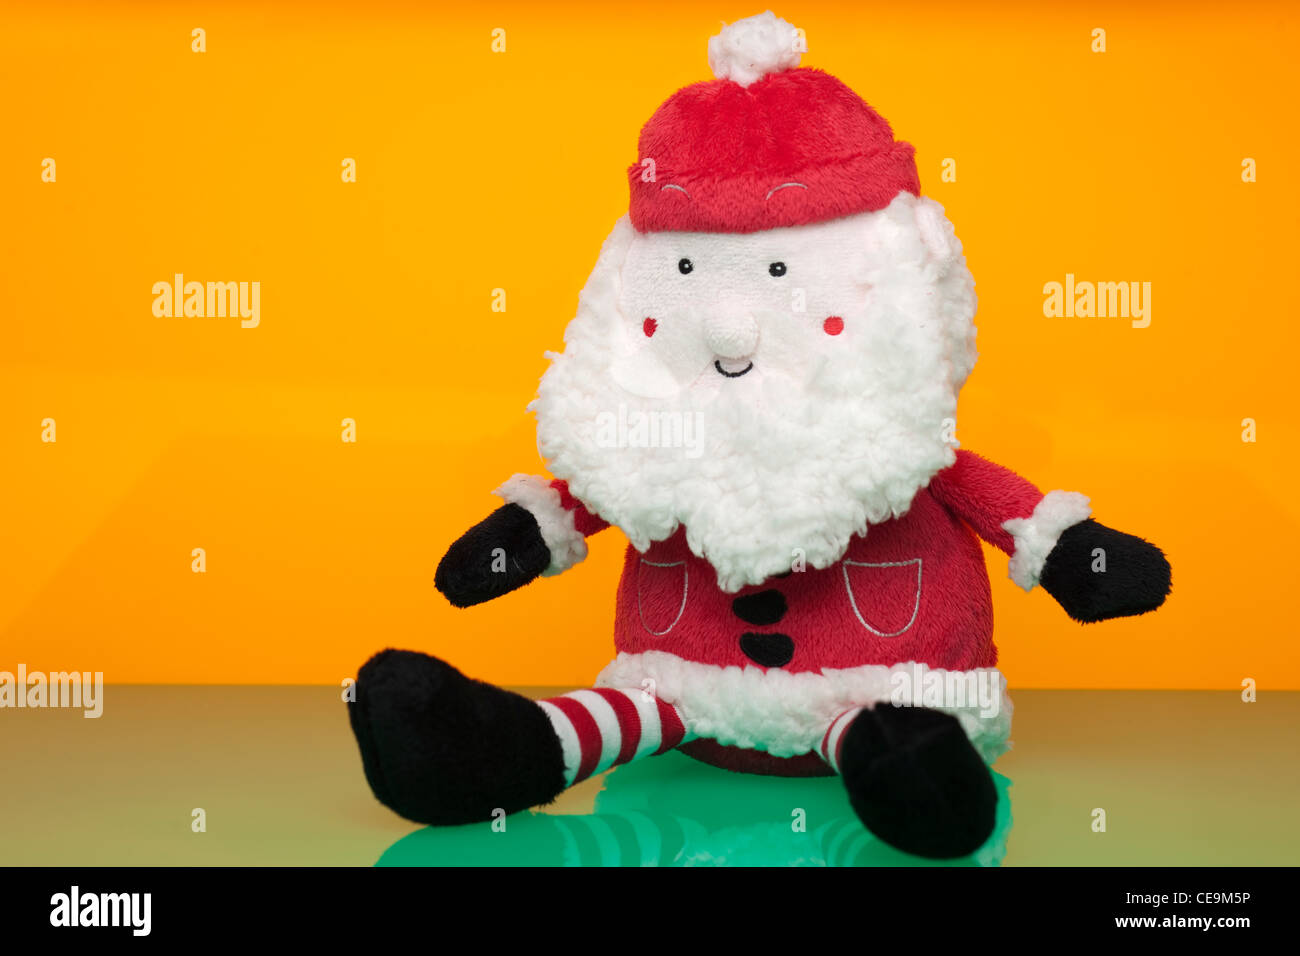 Soft santa cuddly toy Stock Photo